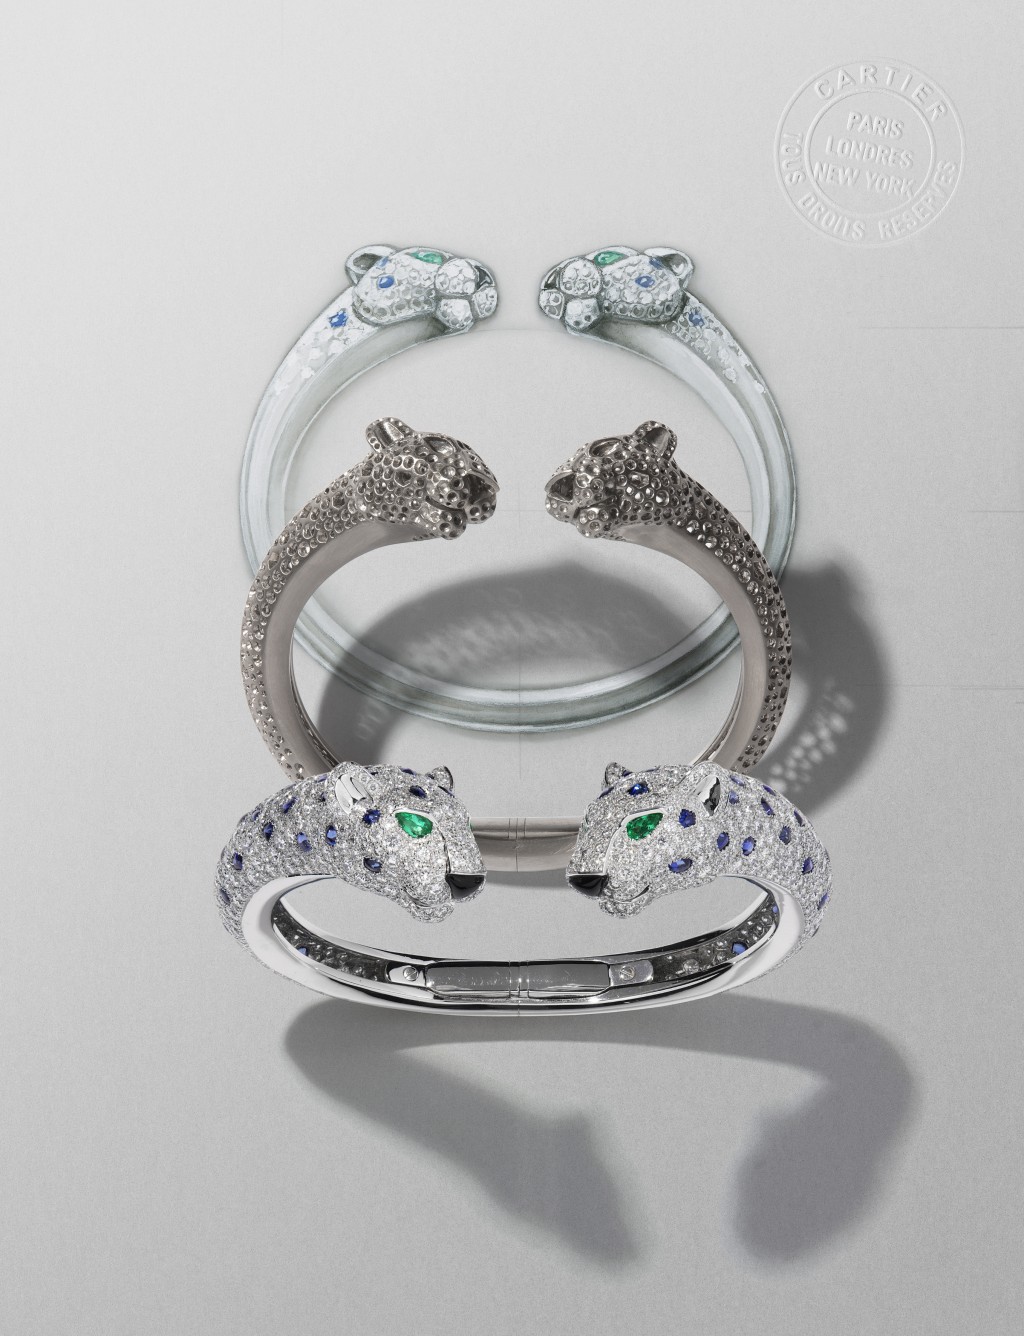 美洲豹系列珠寶的設計，由繪圖到每個製作工序都可見其細緻，像這造型立體的美洲豹白金鑲嵌祖母綠、藍寶石、縞瑪瑙及鑽石手鐲，兩顆豹頭互相對視的設計，栩栩如生。